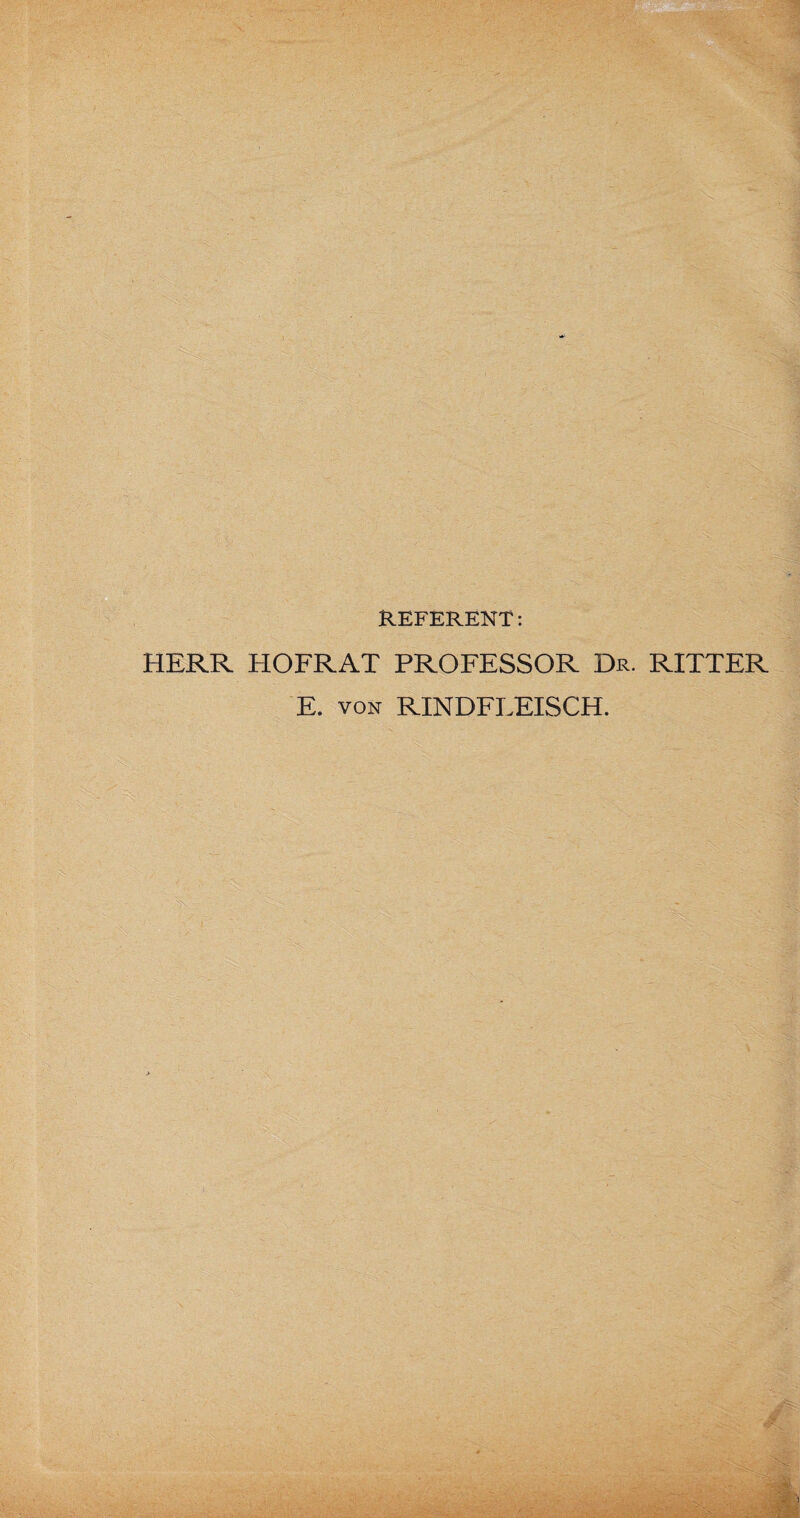 REFERENT: HERR HOFRAT PROFESSOR Dr. RITTER E. von RINDFLEISCH.